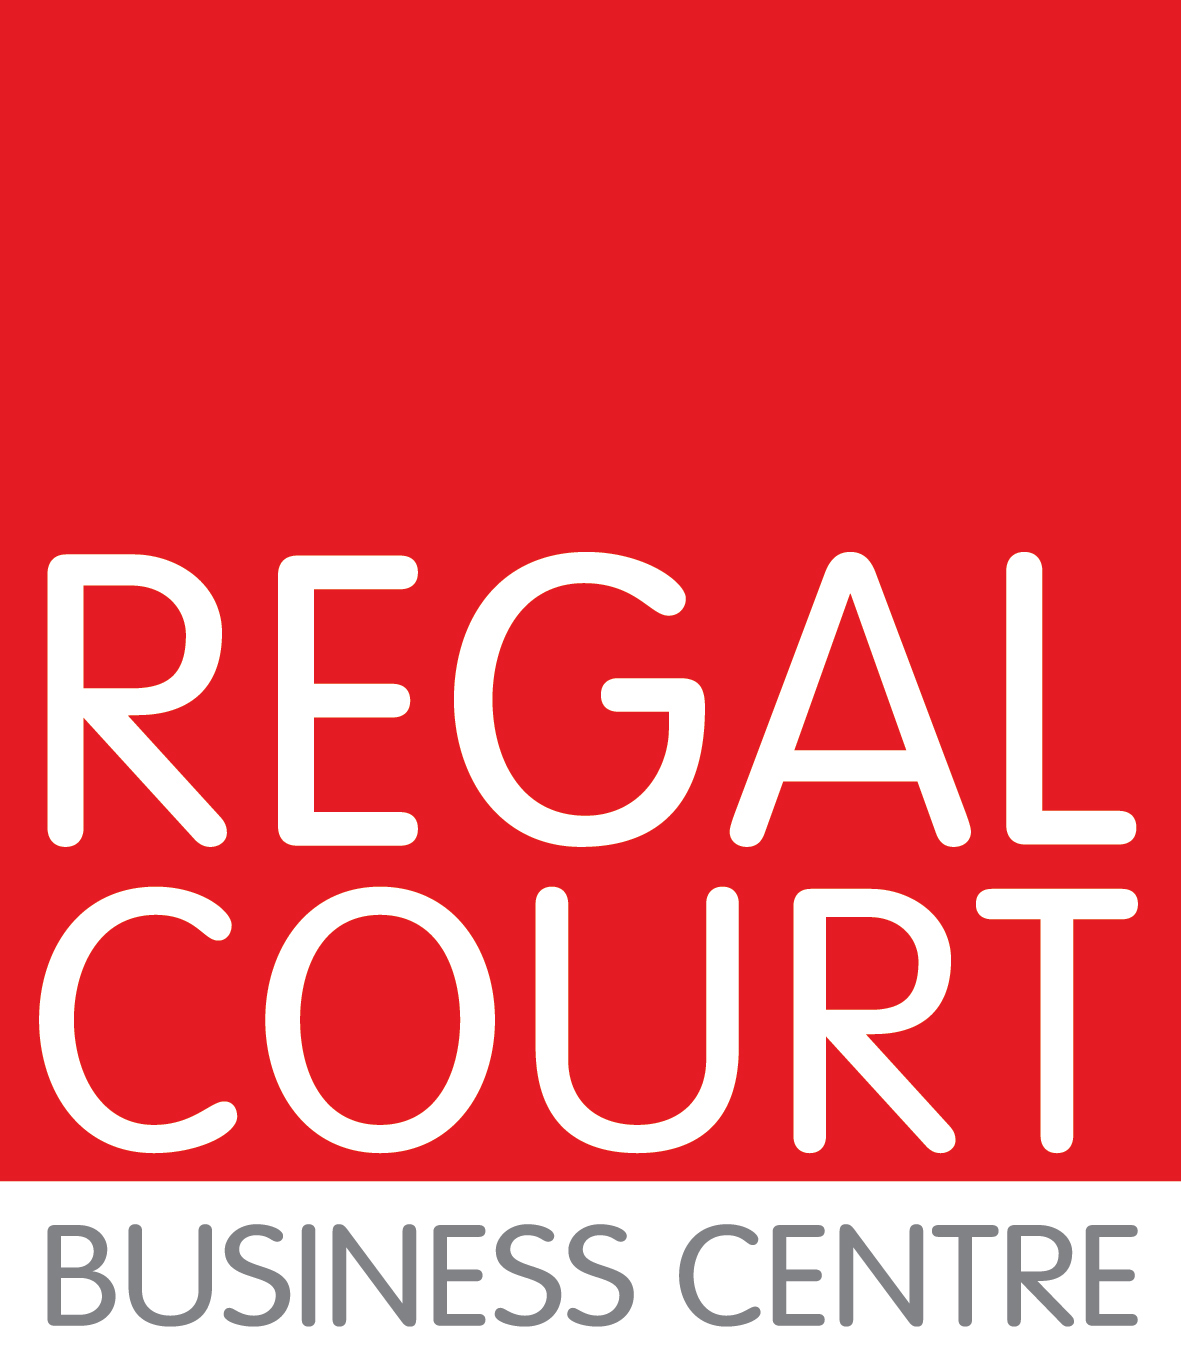 Regal Court Business Centre